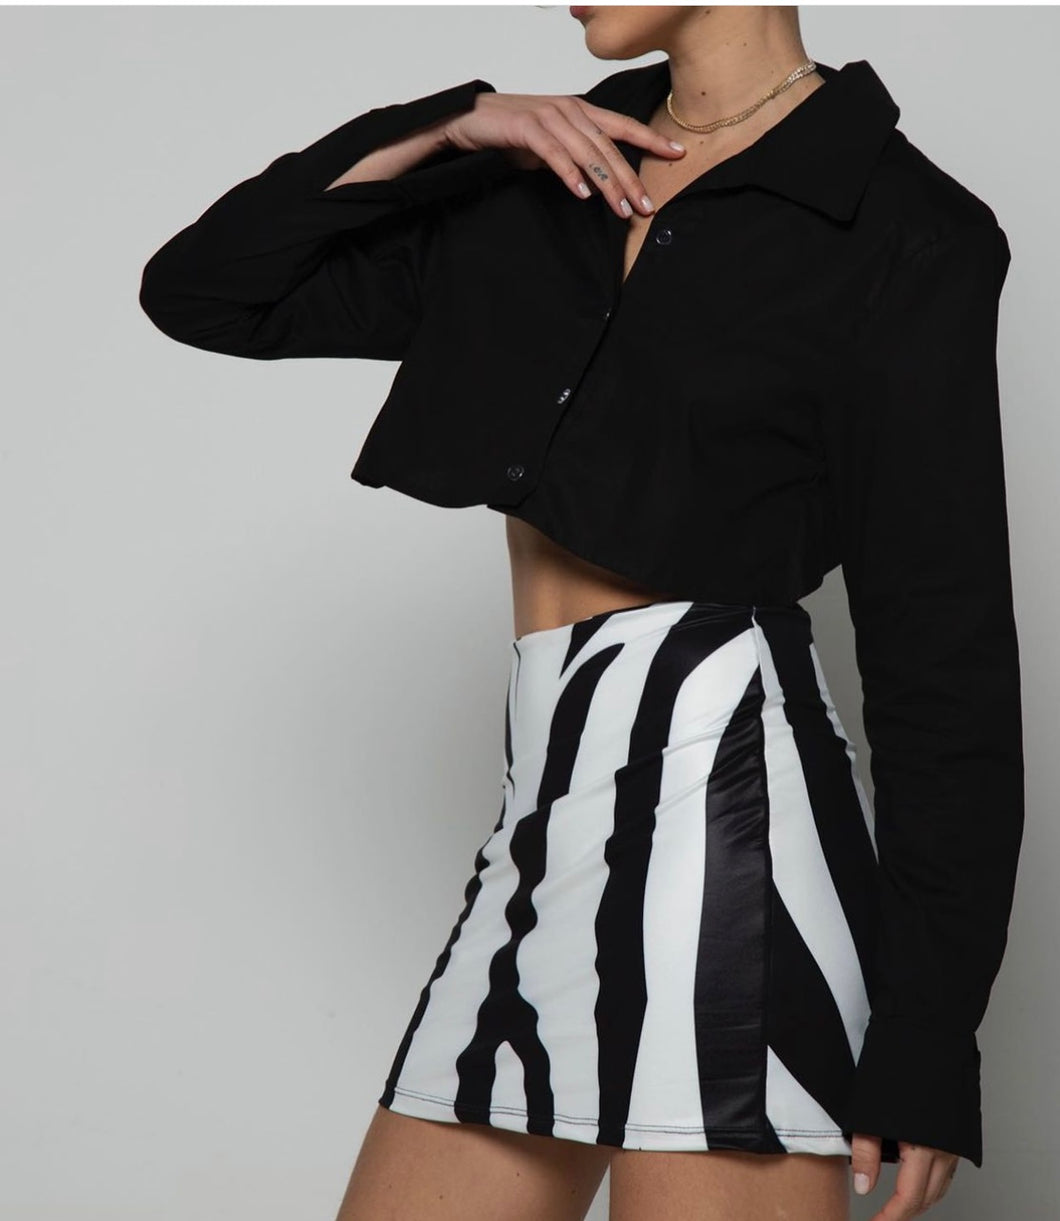 Zebra Mini Skirt